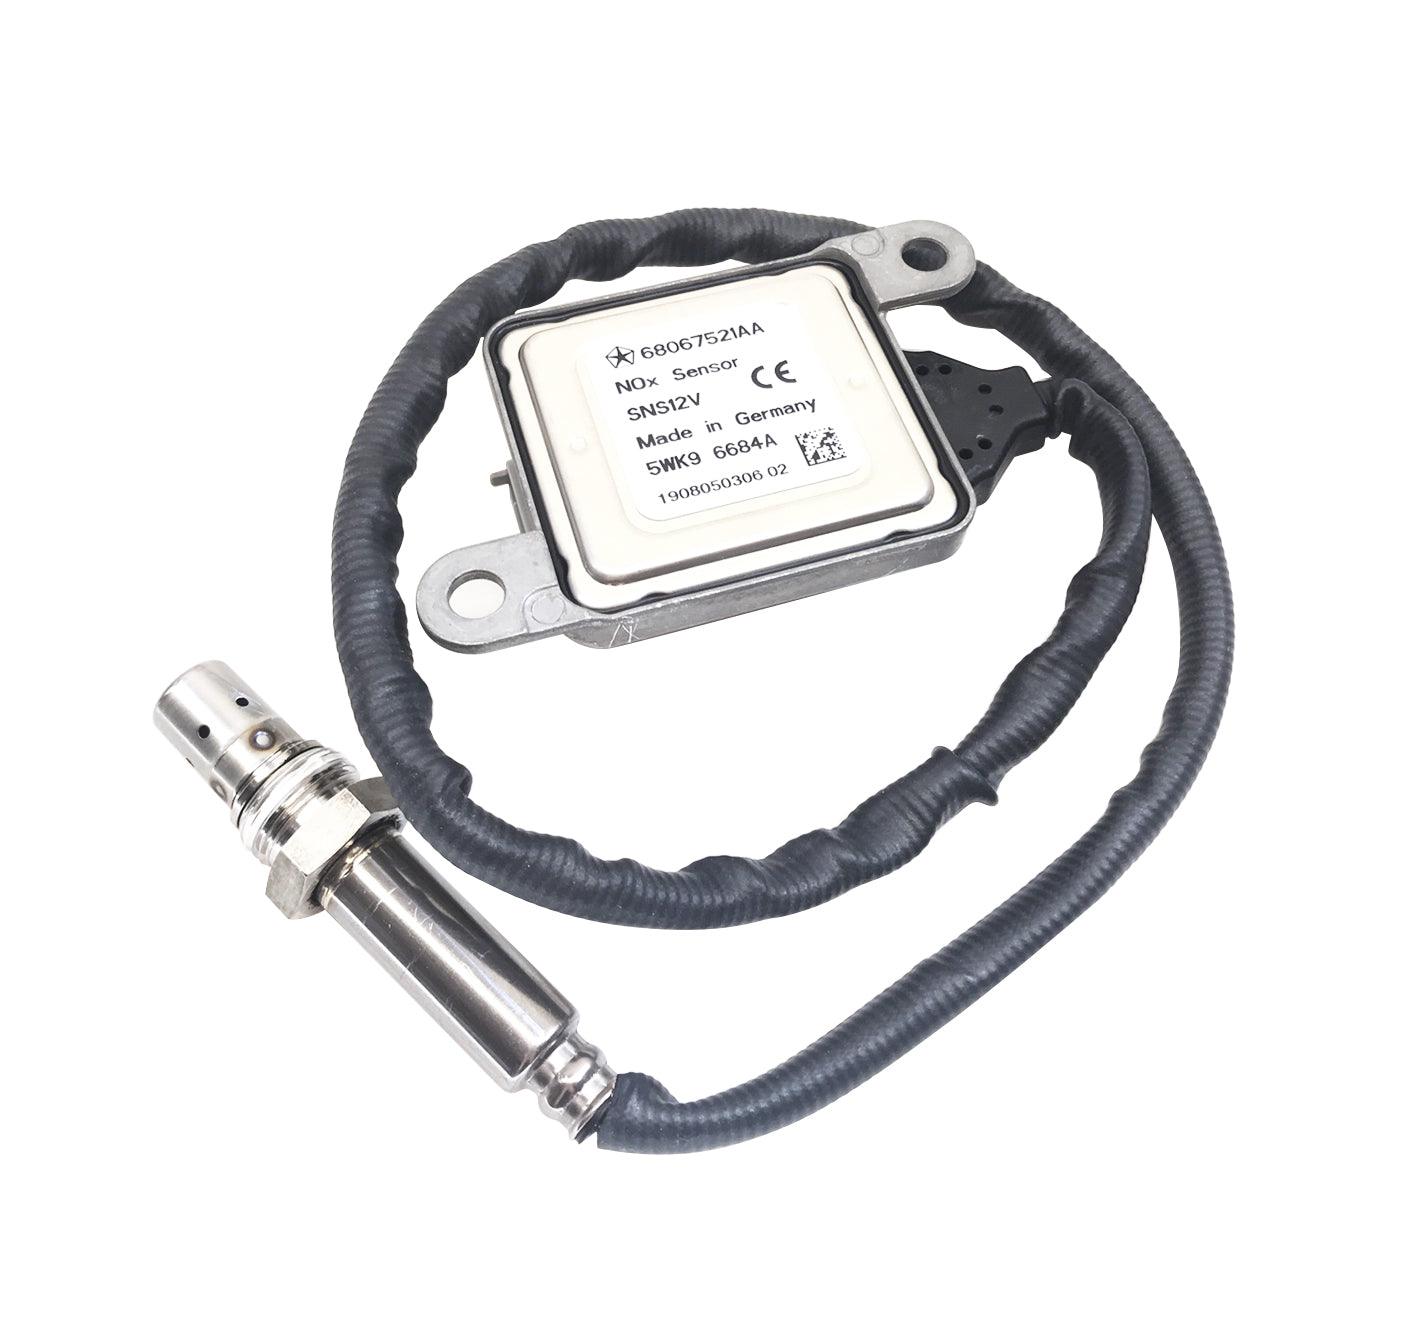 68067521Aa Genuine Mopar® Upstream Nox Sensor For Dodge Ram 3500 6.7 - ADVANCED TRUCK PARTS